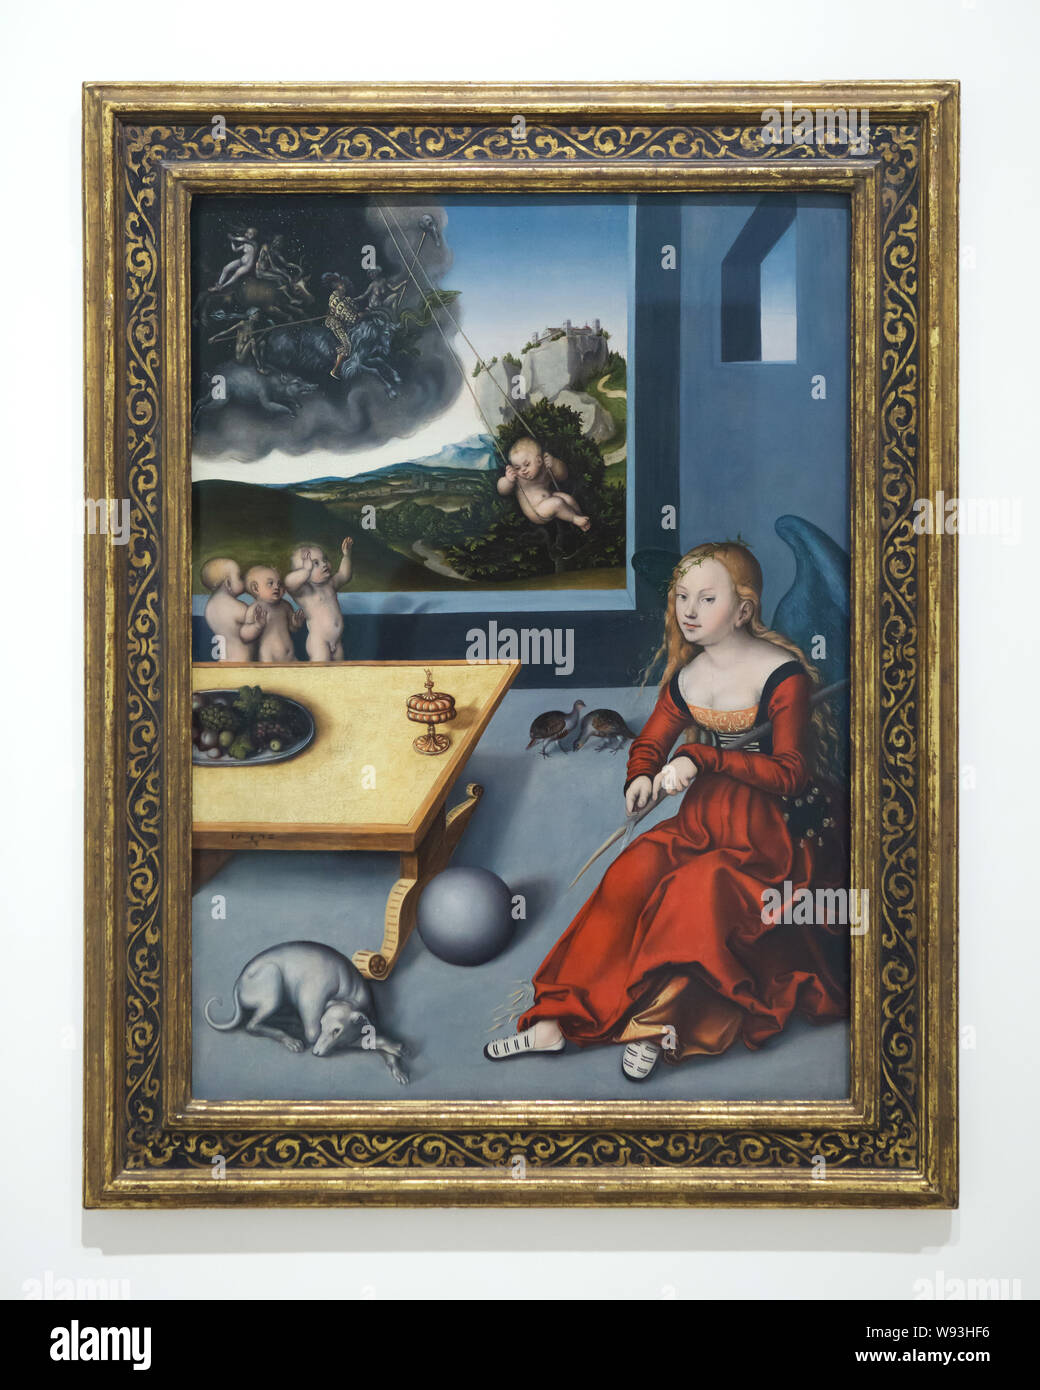 Malerei elancholy' der deutschen Renaissance Maler Lucas Cranach der Ältere (1532) Auf der Anzeige im Unterlinden Museum (Musée Unterlinden in Colmar, Elsass, Frankreich. Stockfoto